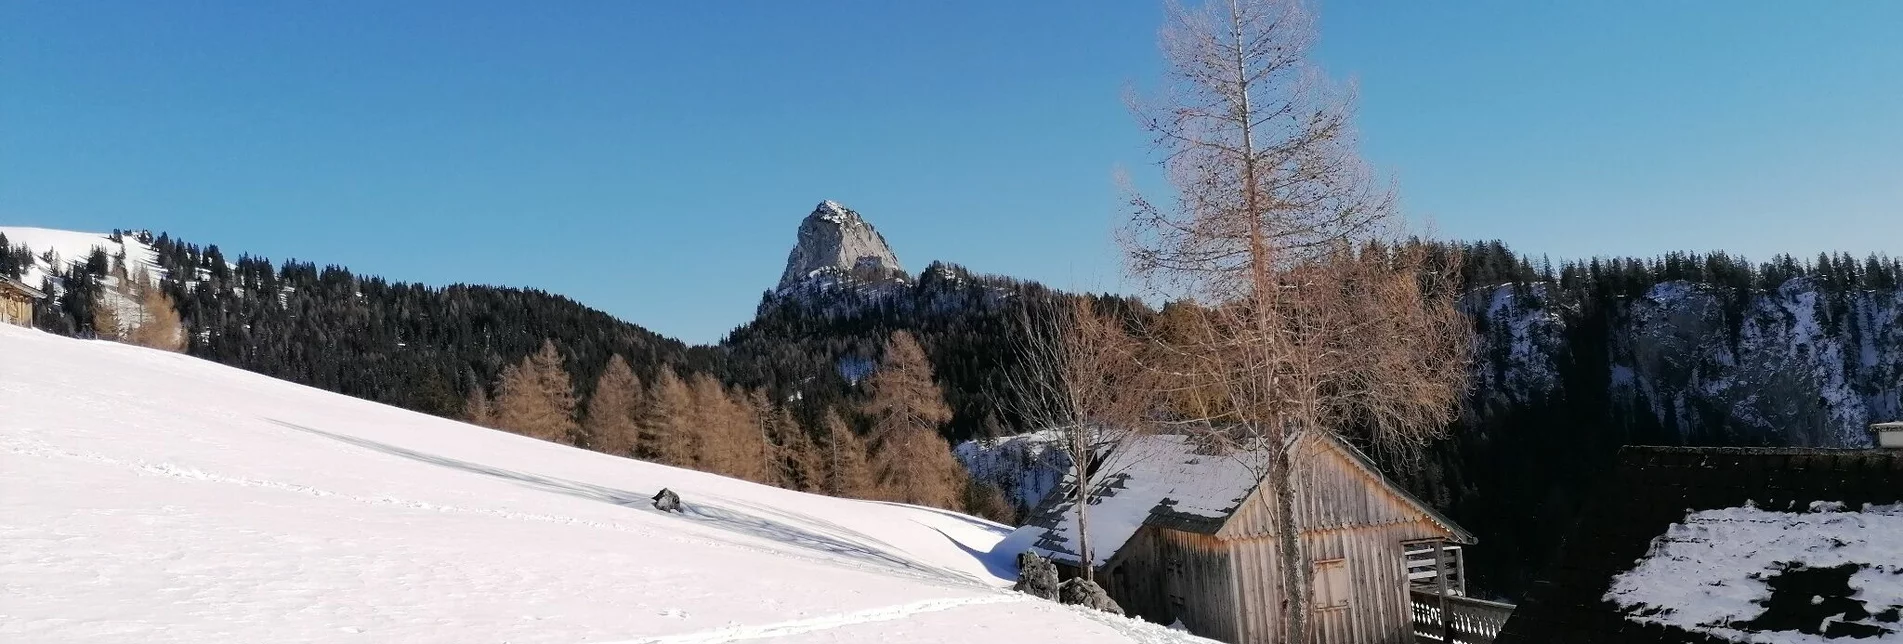 Ski Touring Ski tour to the Bärenfeichtenalm - Touren-Impression #1 | © Erlebnisregion Schladming-Dachstein